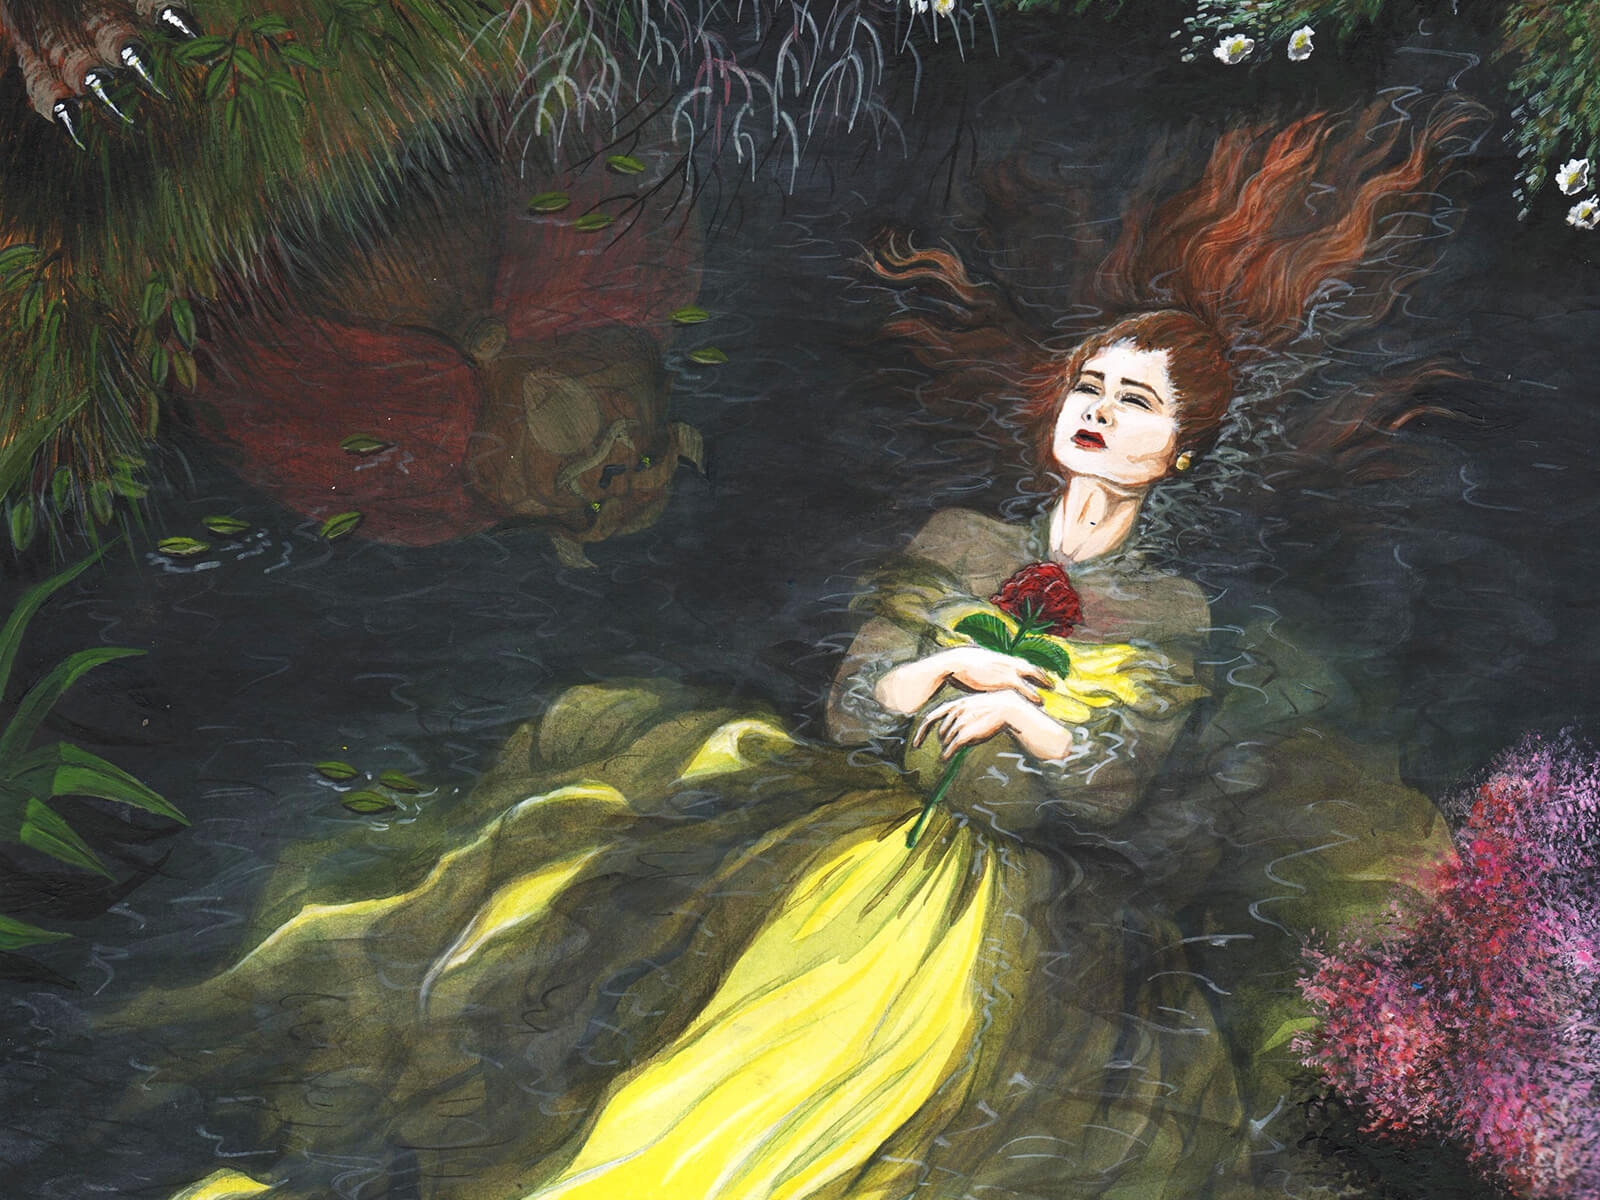 Una mujer con un vestido amarillo que fluye agarra en su pecho una sola flor roja flotando inconsciente en un estanque del bosque.